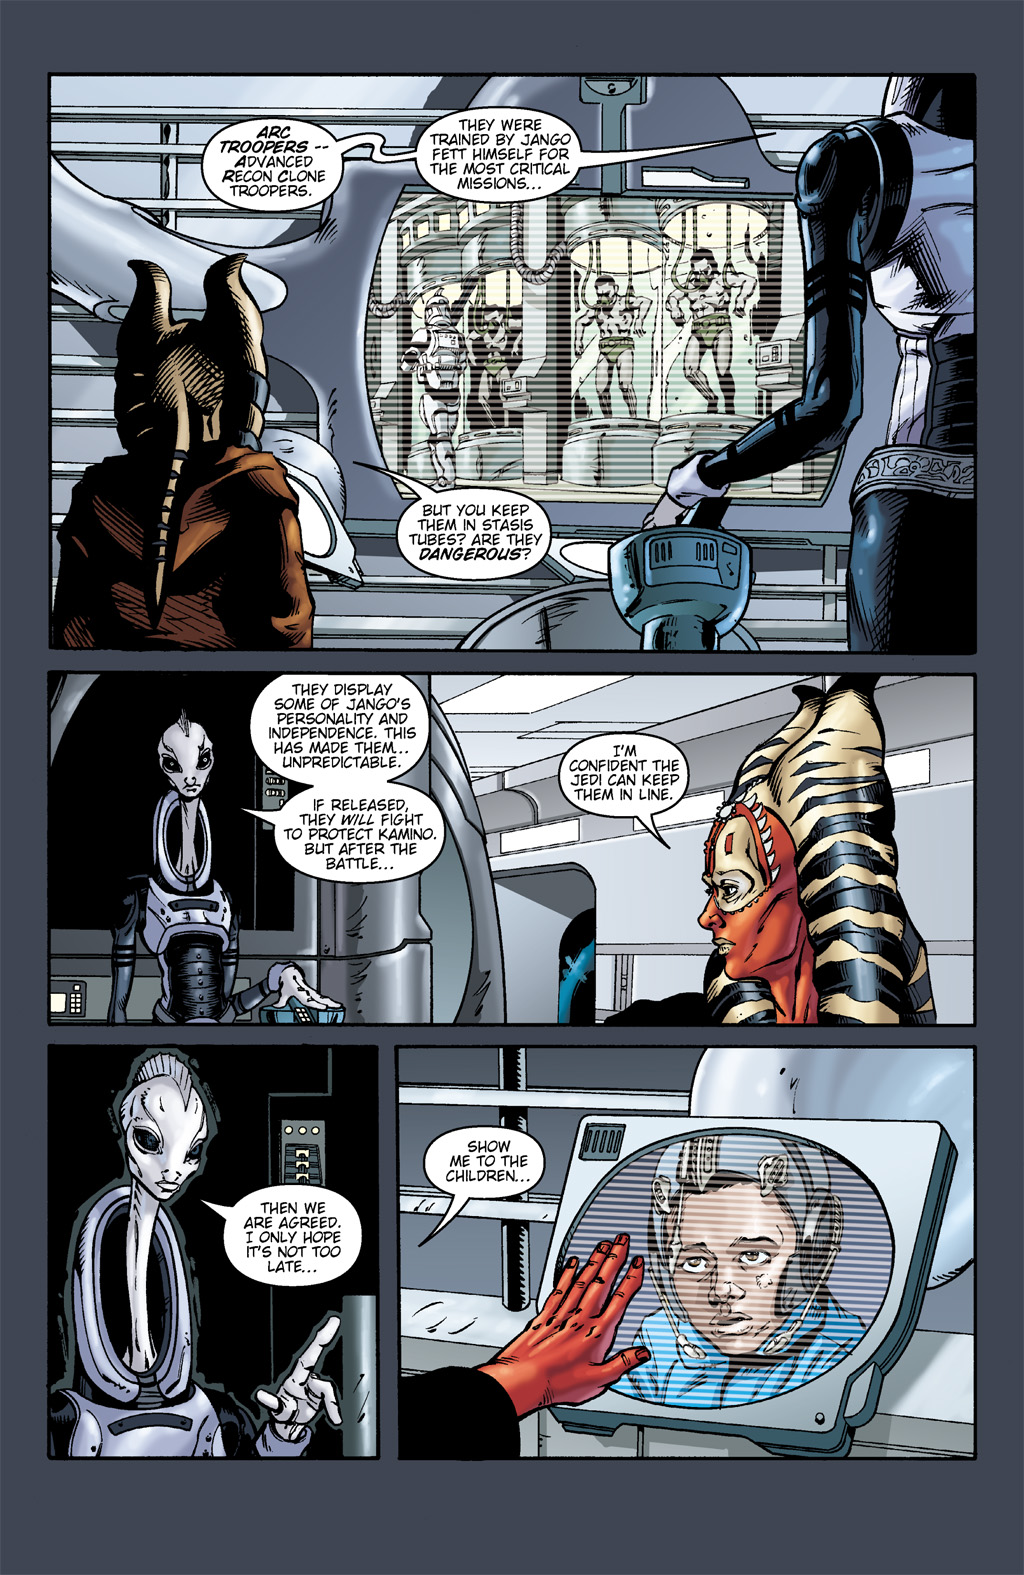 Read online Star Wars: Clone Wars comic -  Issue # TPB 1 - 51